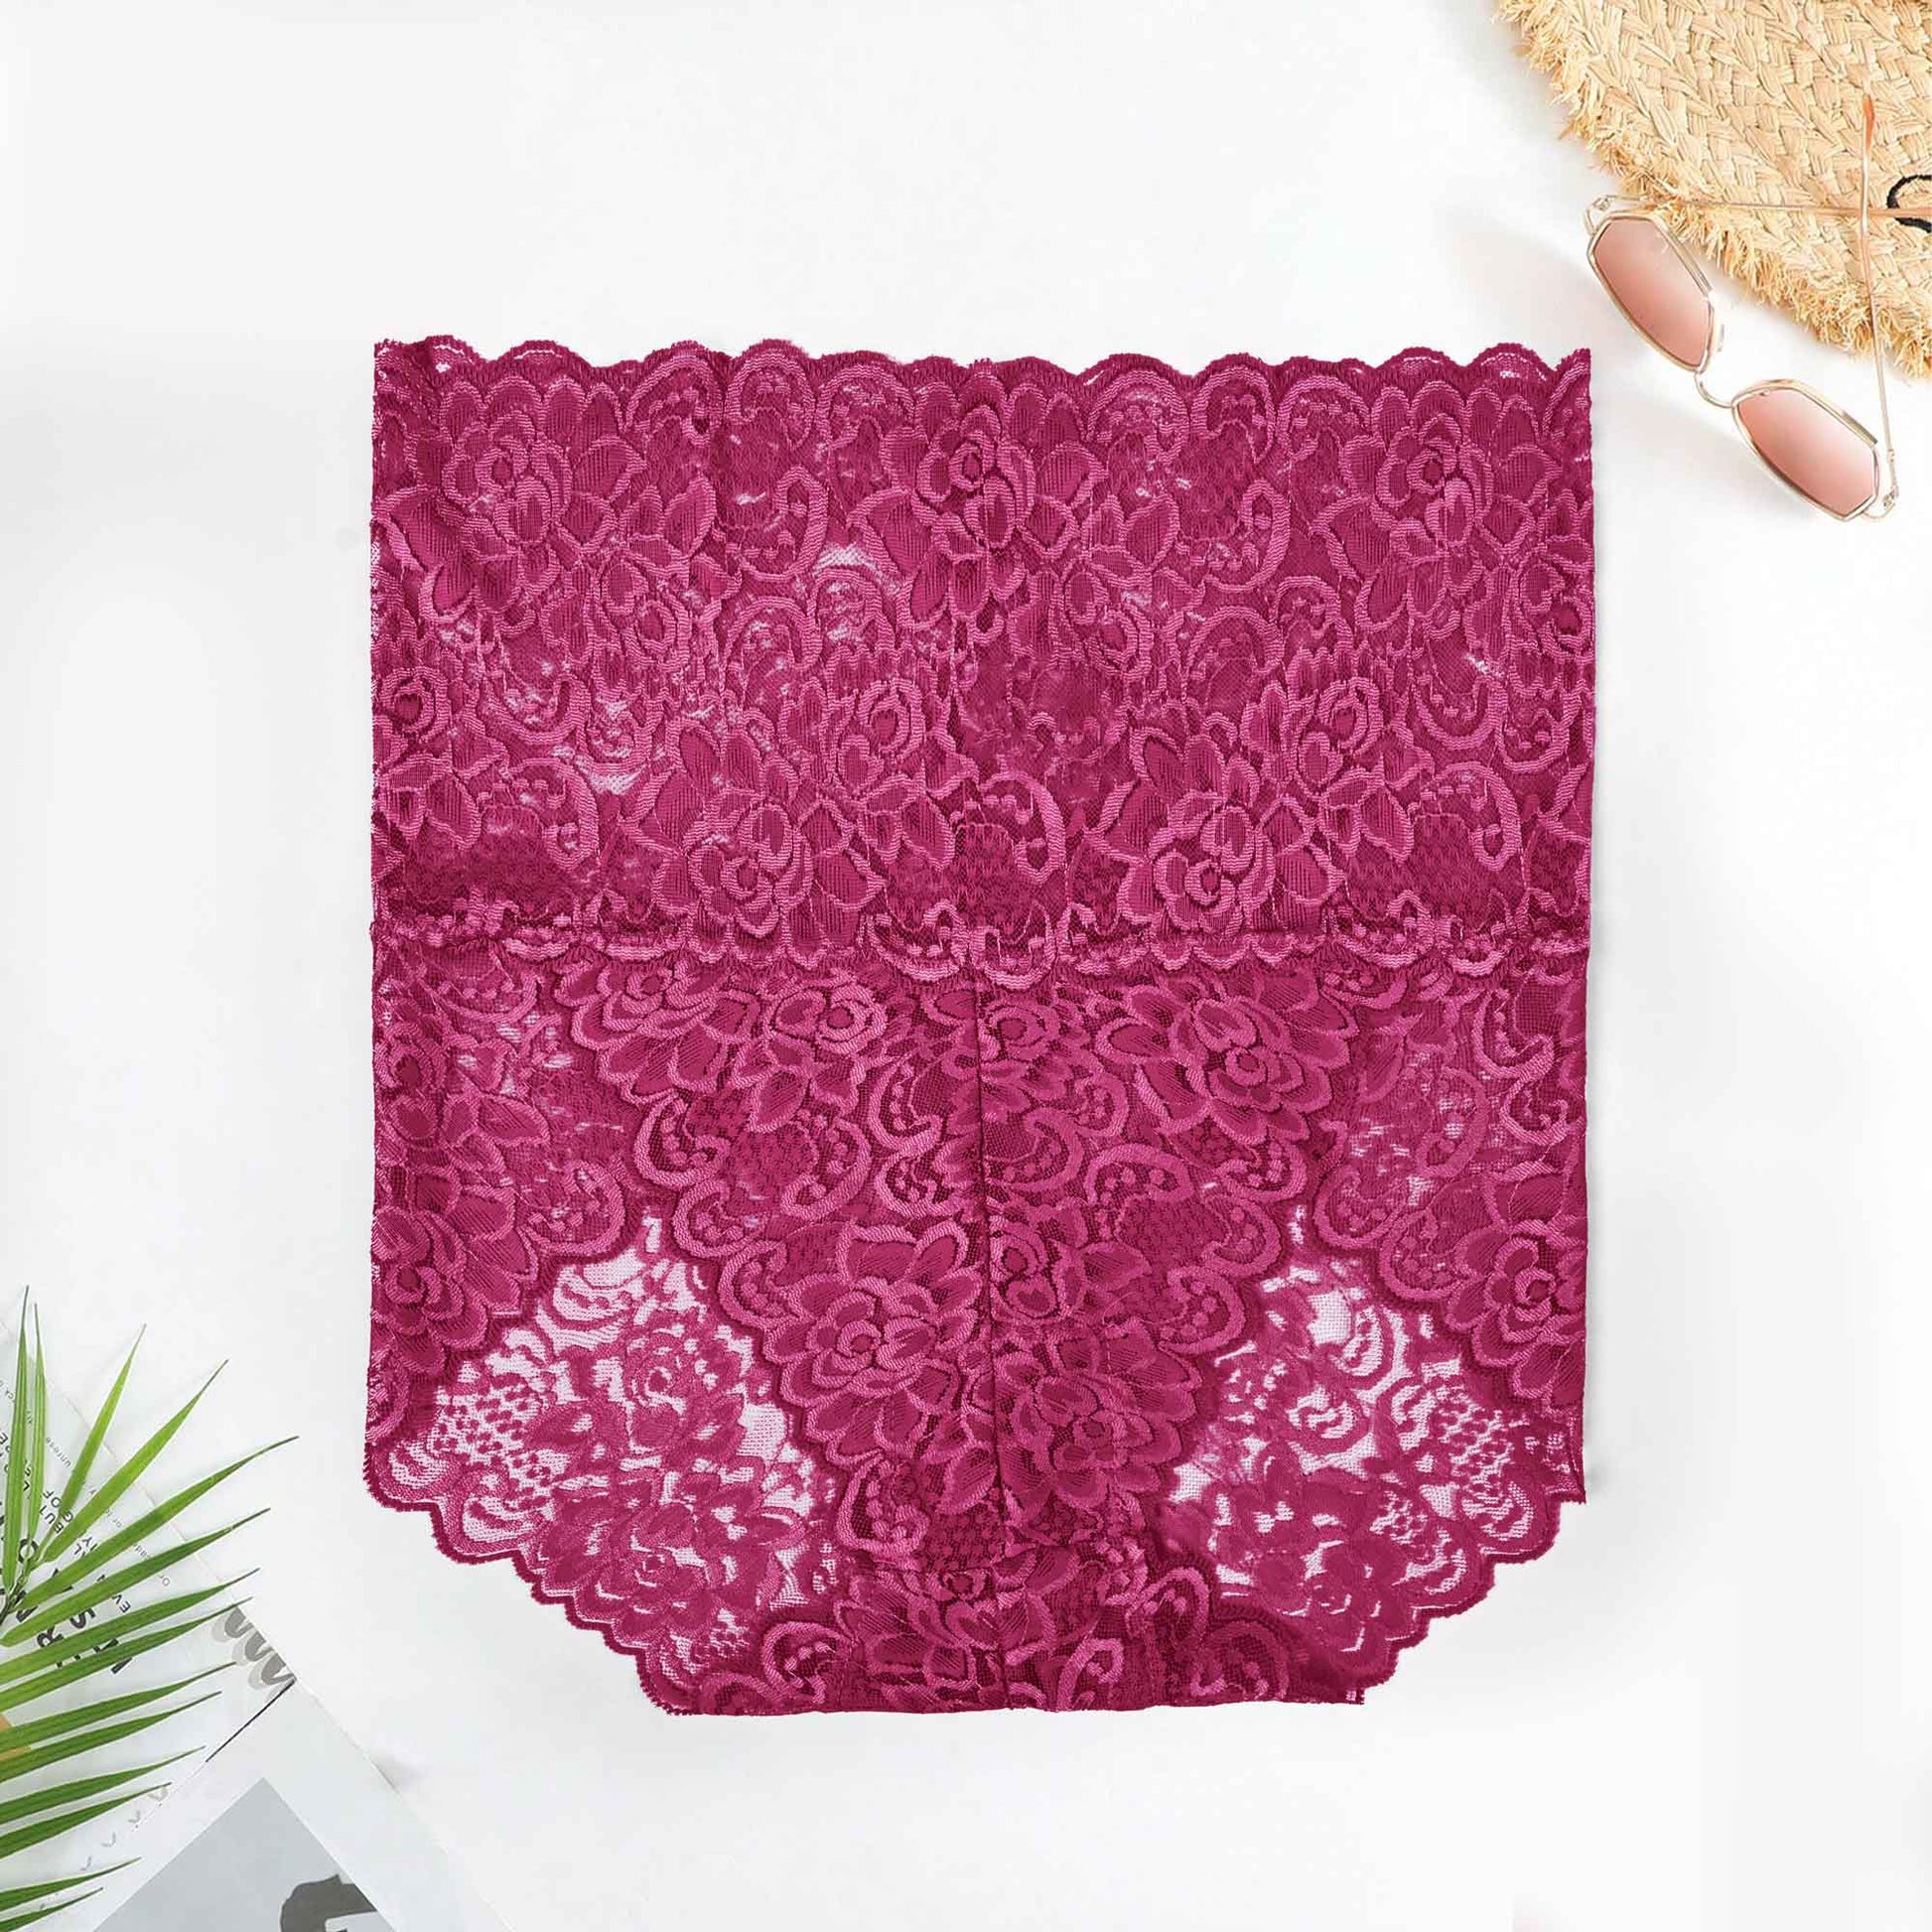 High Waist Lace Underwear in Hot Pink